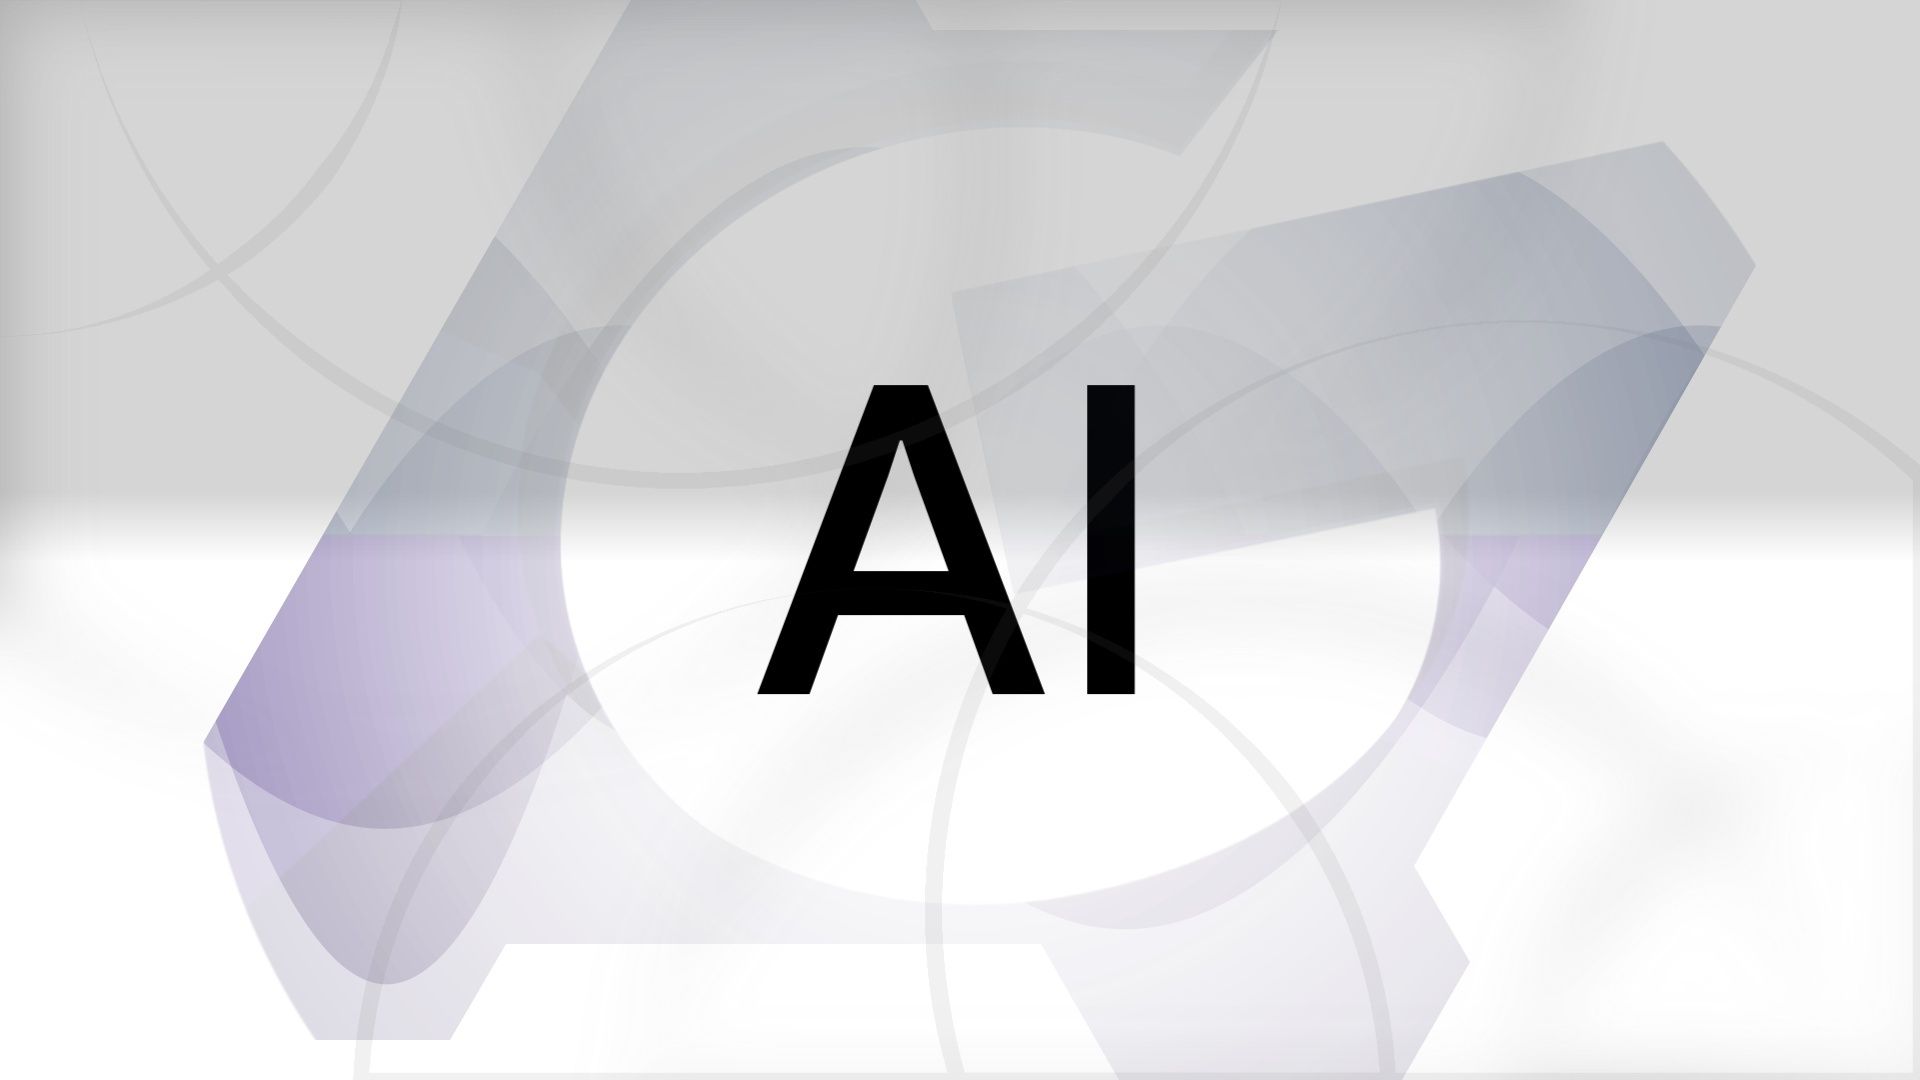 As iniciais 'AI' contra um fundo cinza claro com o logotipo do Android Police visível